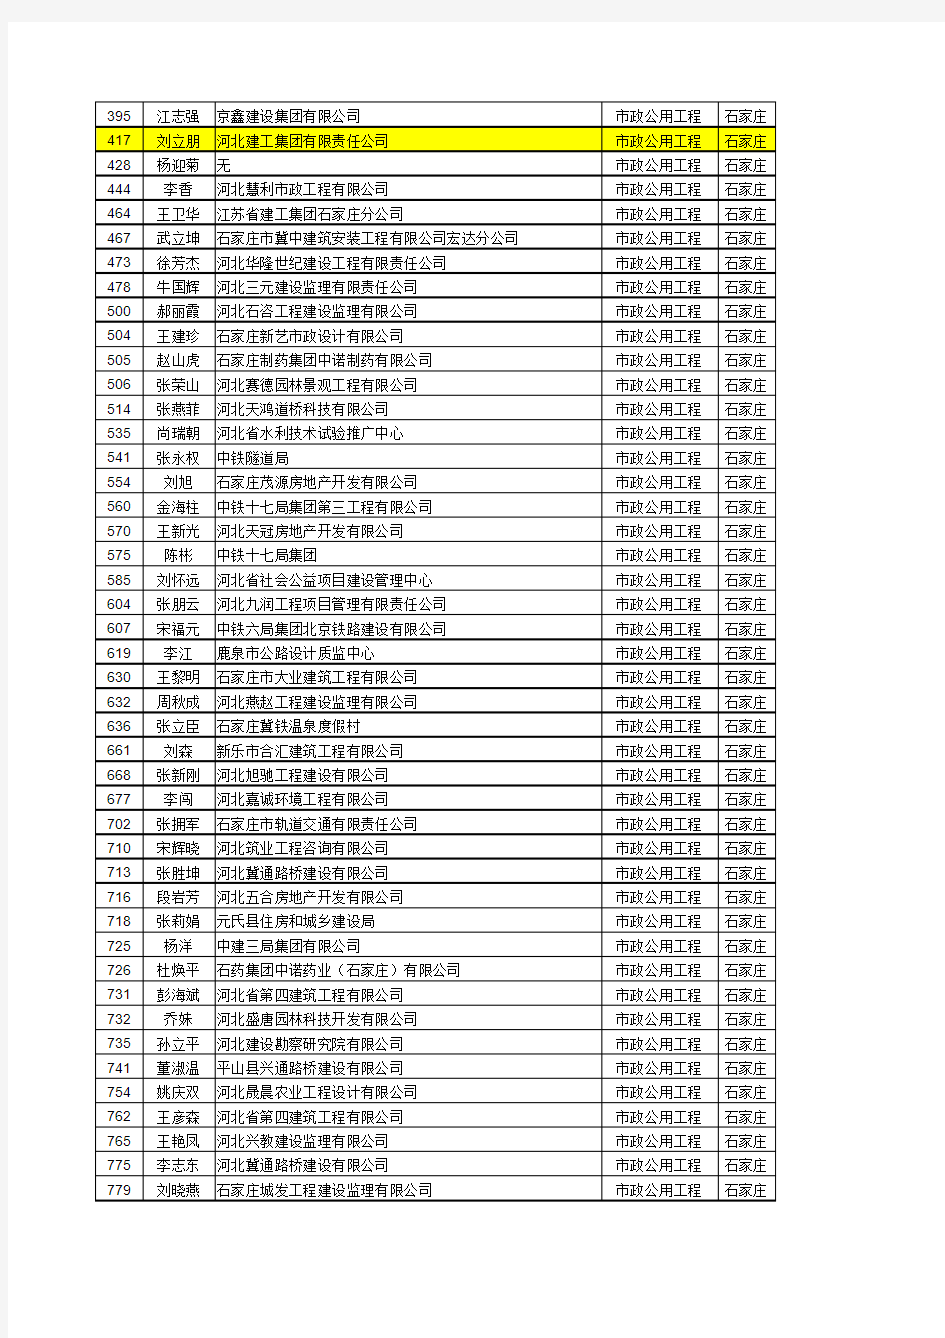 2014年河北省一级建造师合格名单